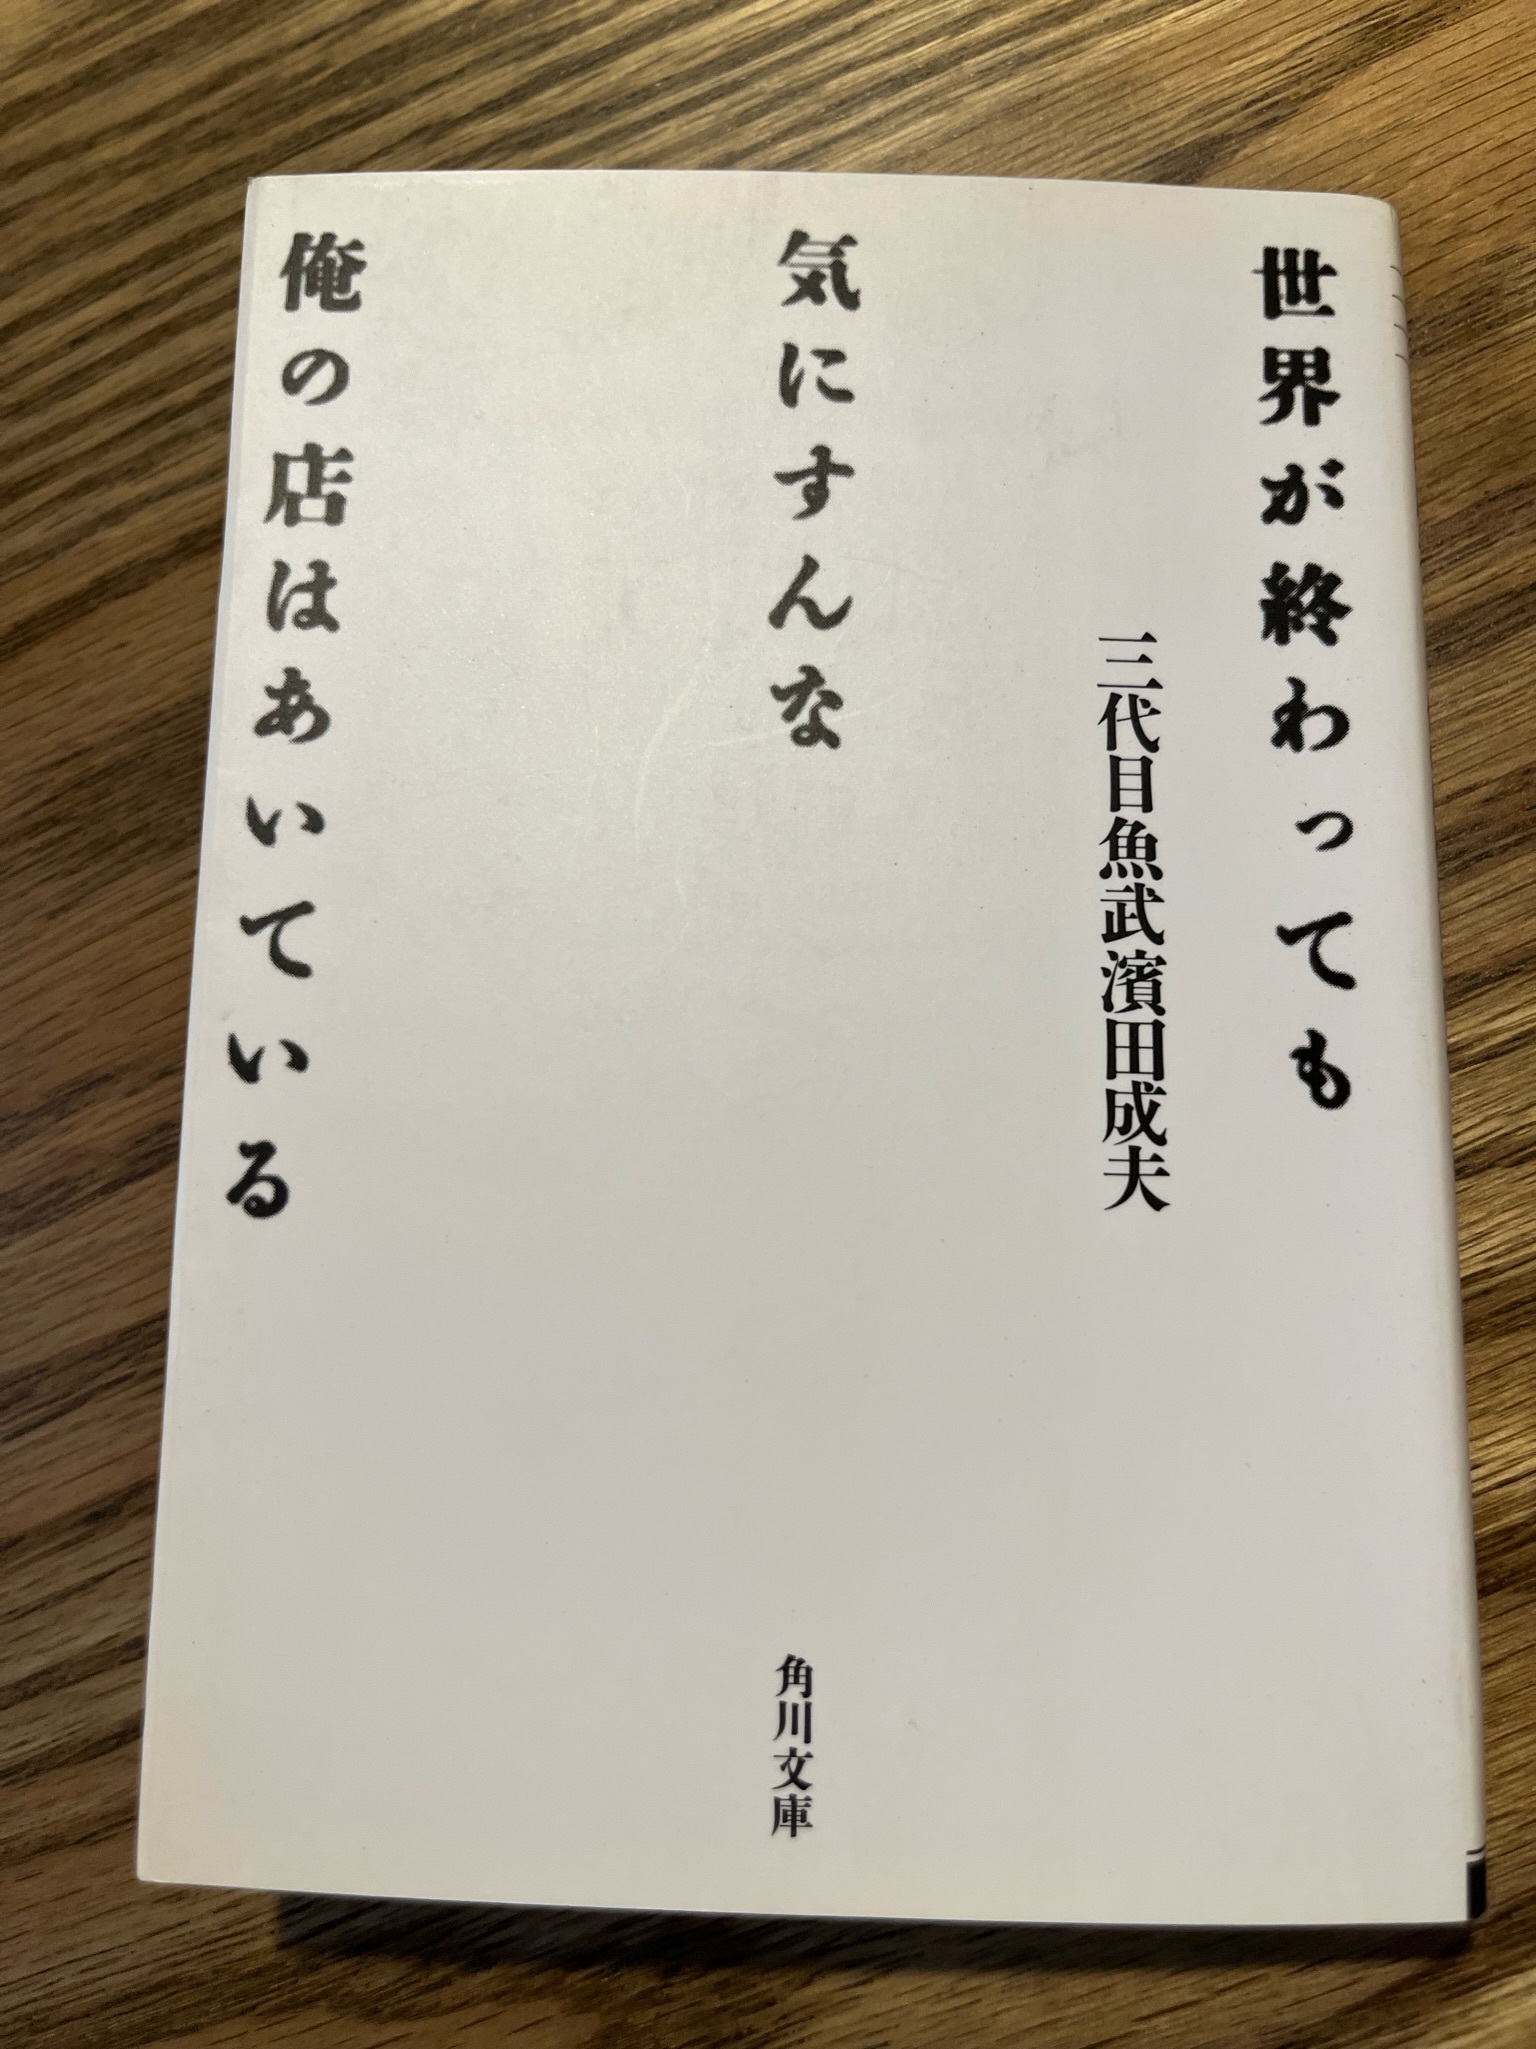 三代目魚武濱田成夫の詩「待つな」 - NEWS & TOPICS｜フラワーカンパニー